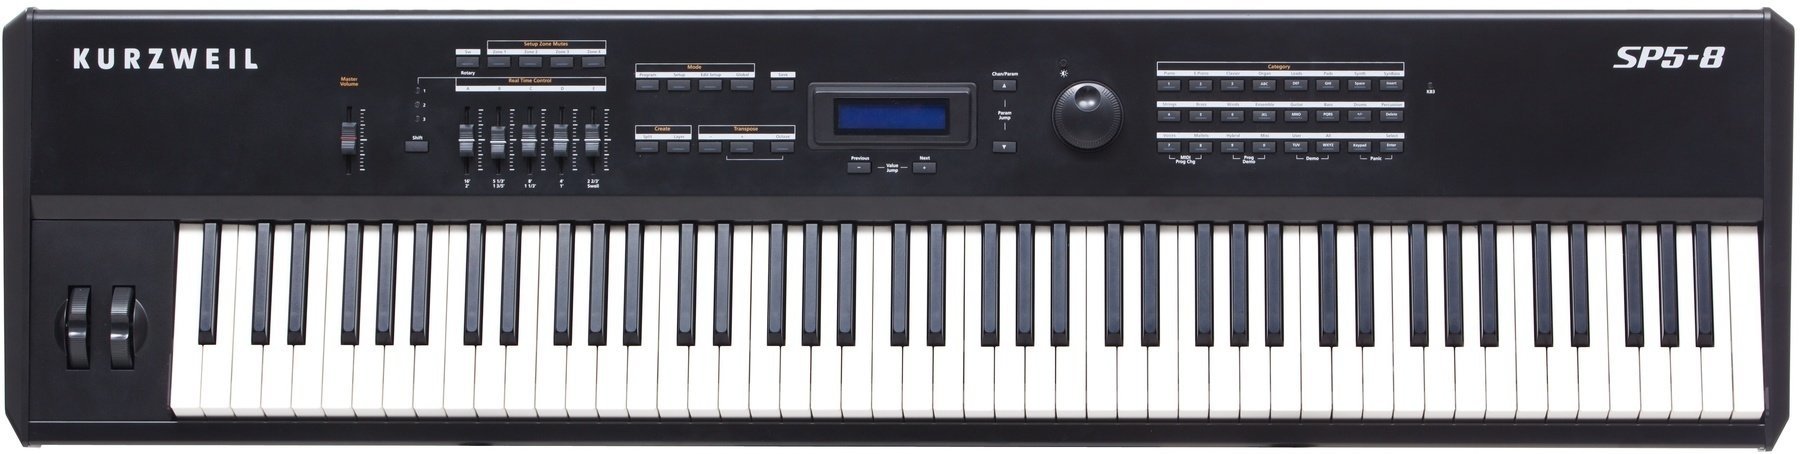 Ψηφιακό Stage Piano Kurzweil SP5-8